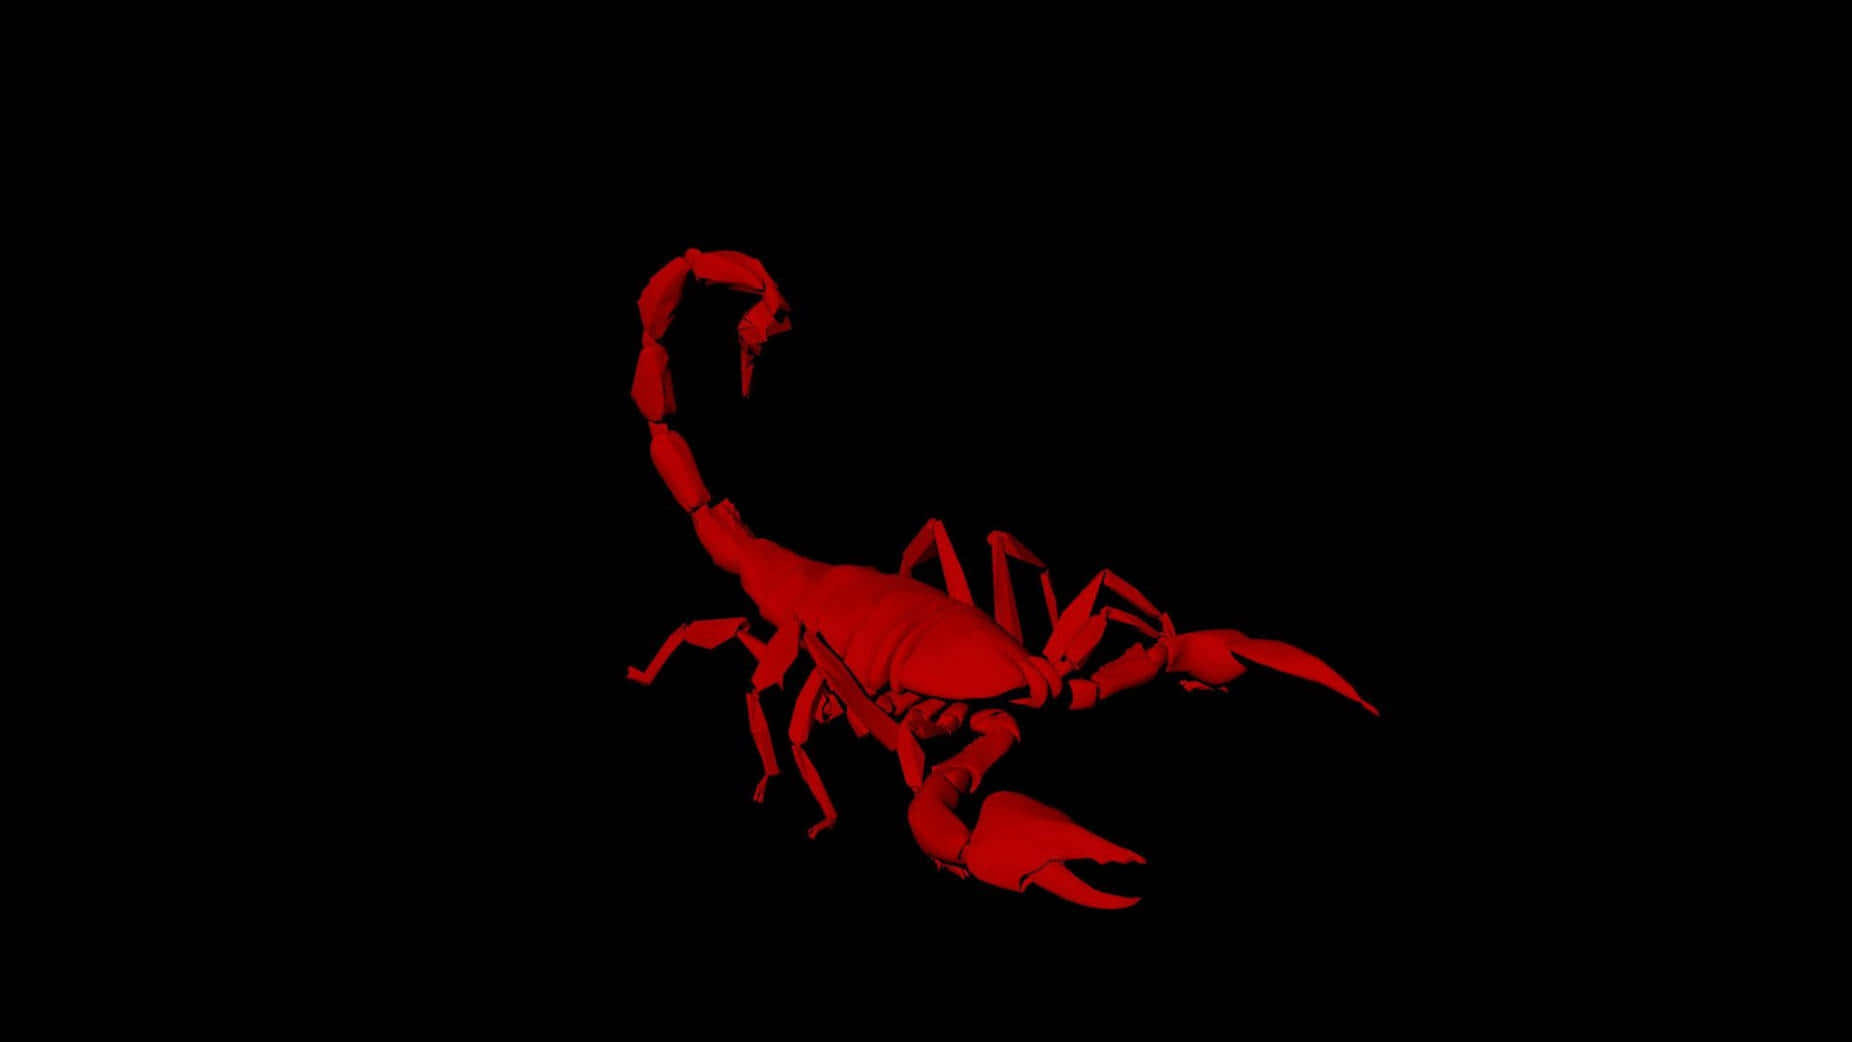 Scorpion Wallpapers - Top 35 Best Scorpion Wallpapers Download